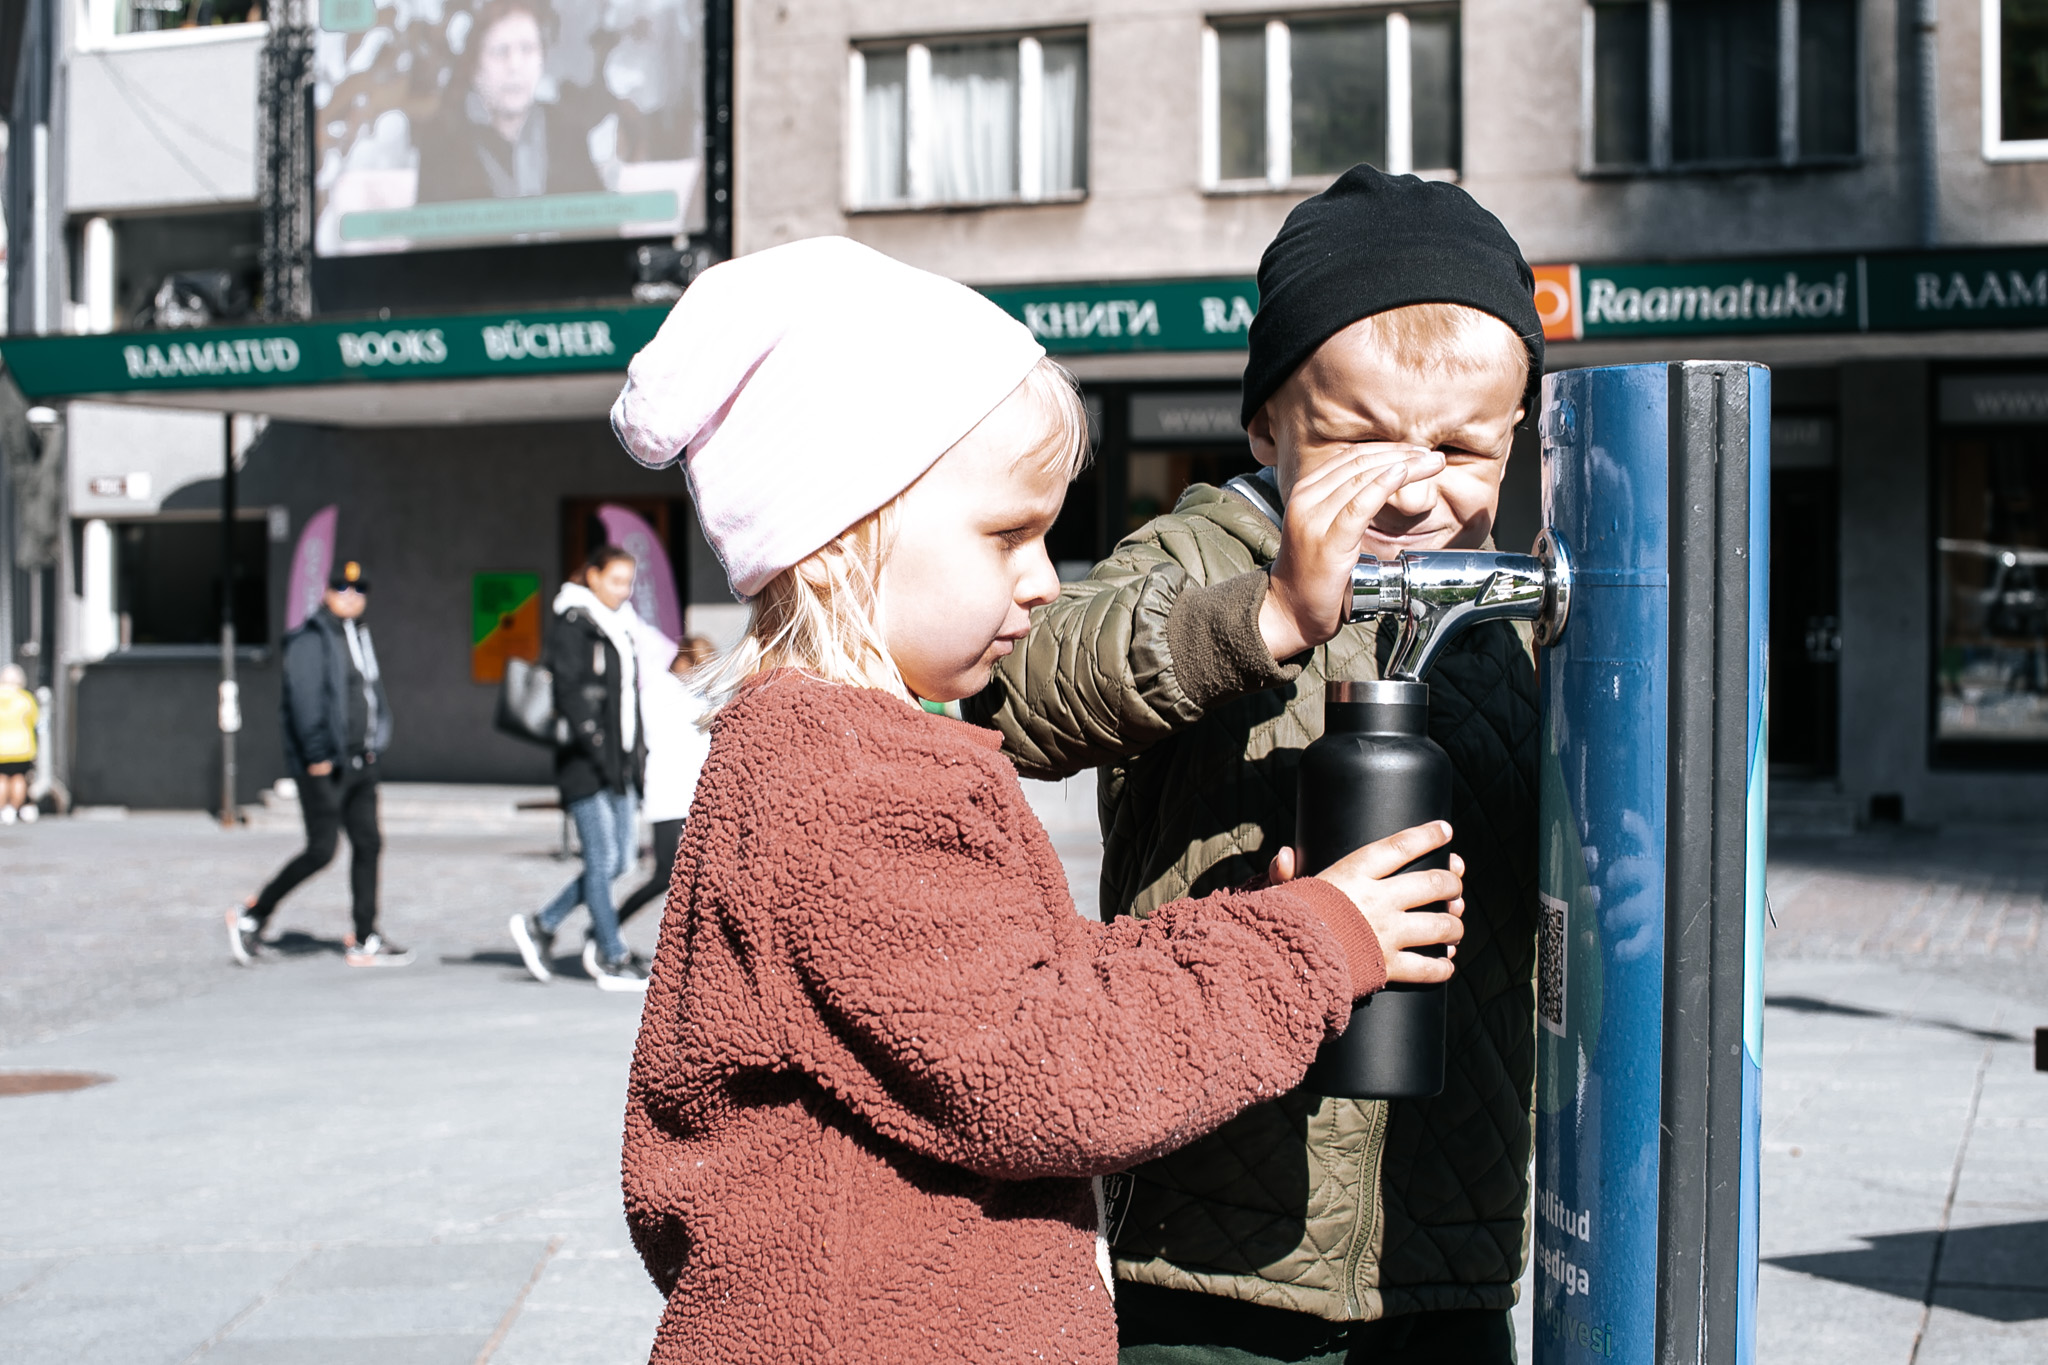 Kaks last kasutamas puhta joogivee kraani Tallinna vanalinnas.